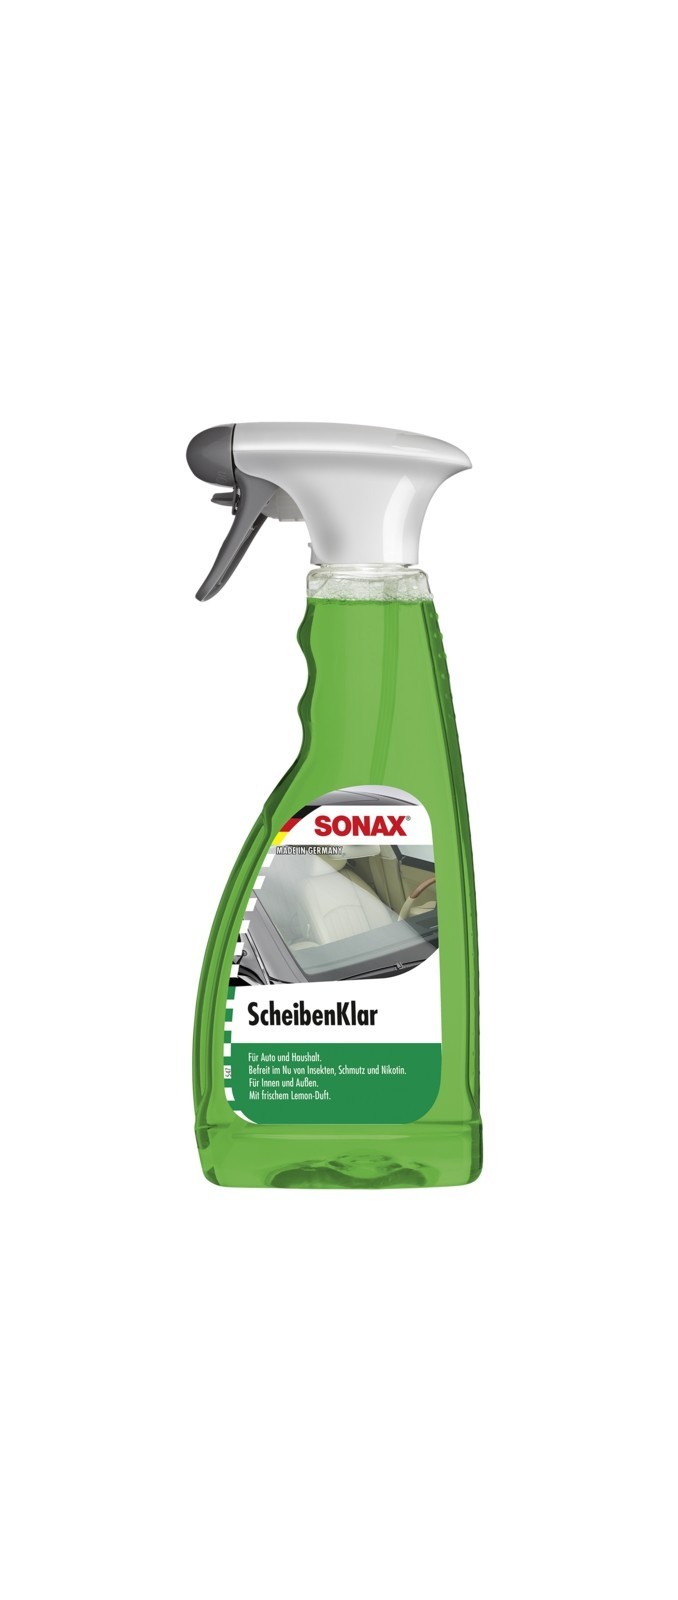 SONAX Scheiben-Klar (500 ml), Art.-Nr. 03382410